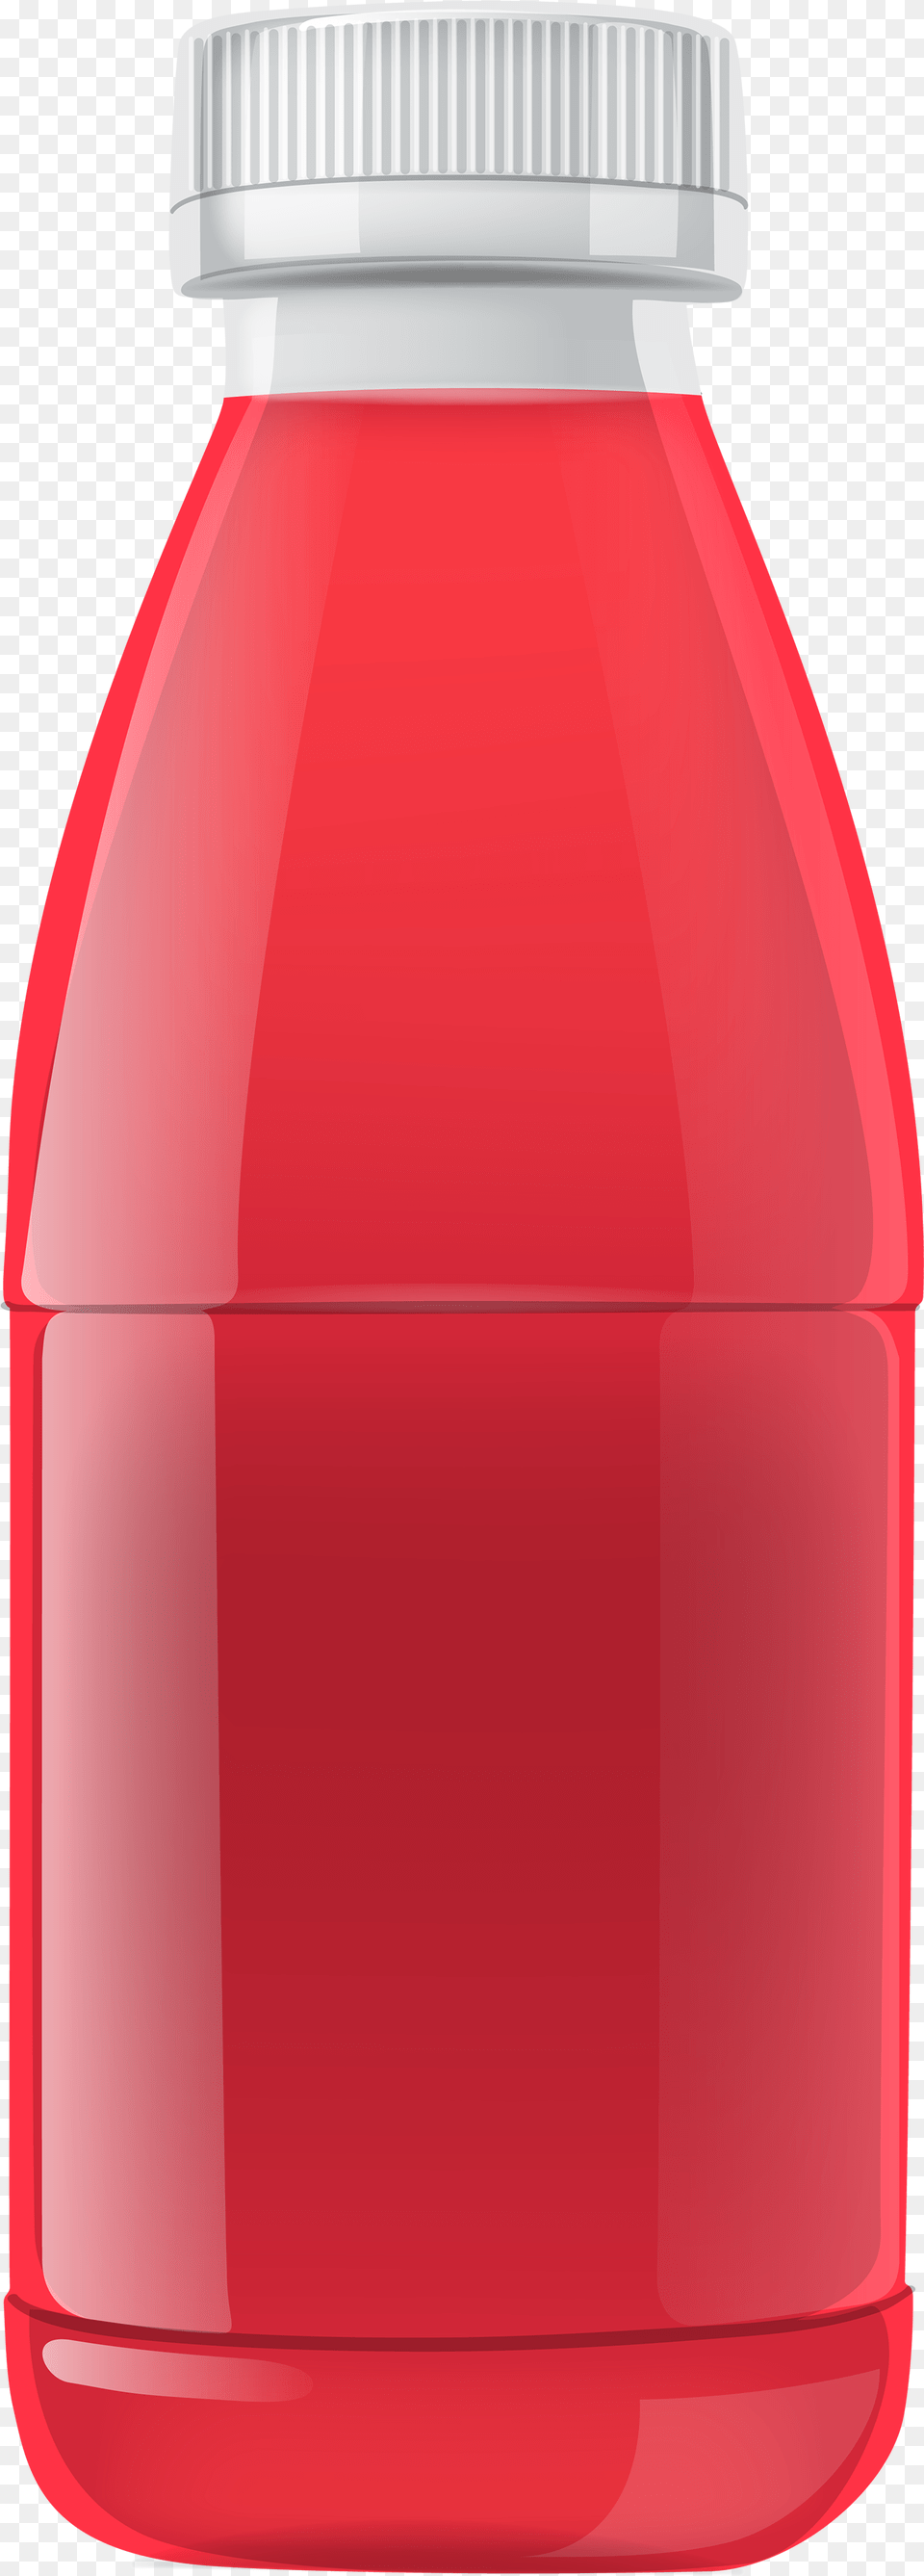 Red Juice Bottle Clipart Juice Bottle Clipart, Beverage, Food, Ketchup, Soda Free Png